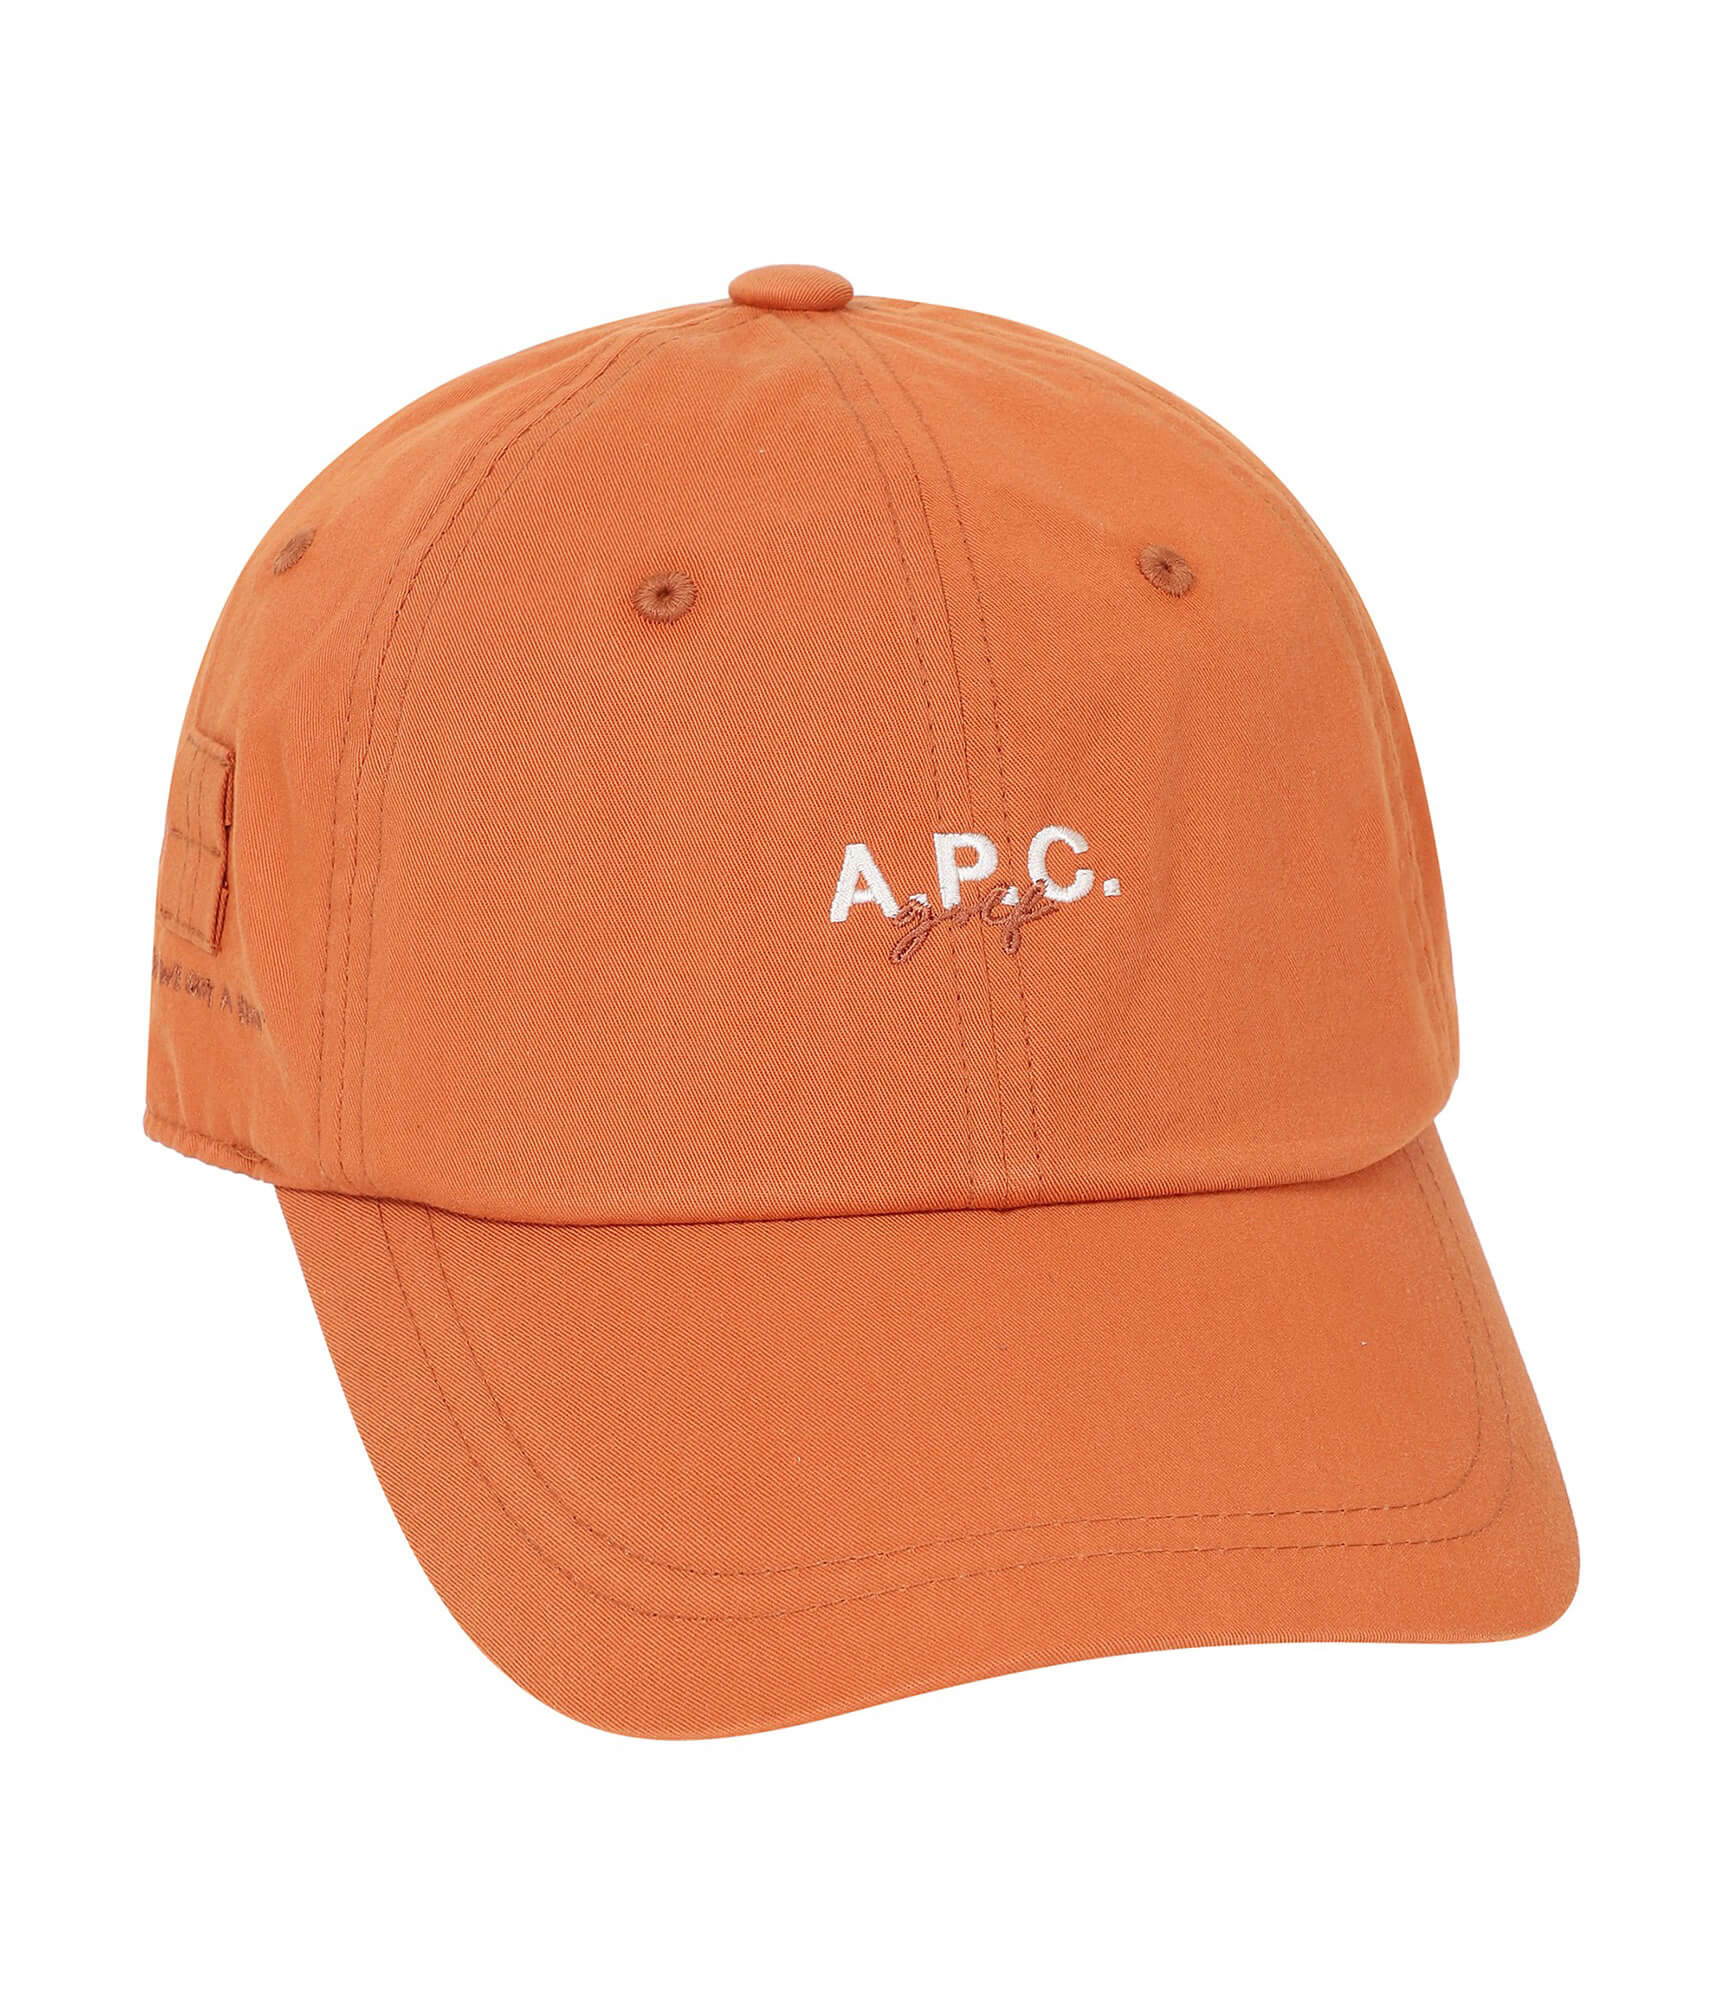 CAPS / HATS